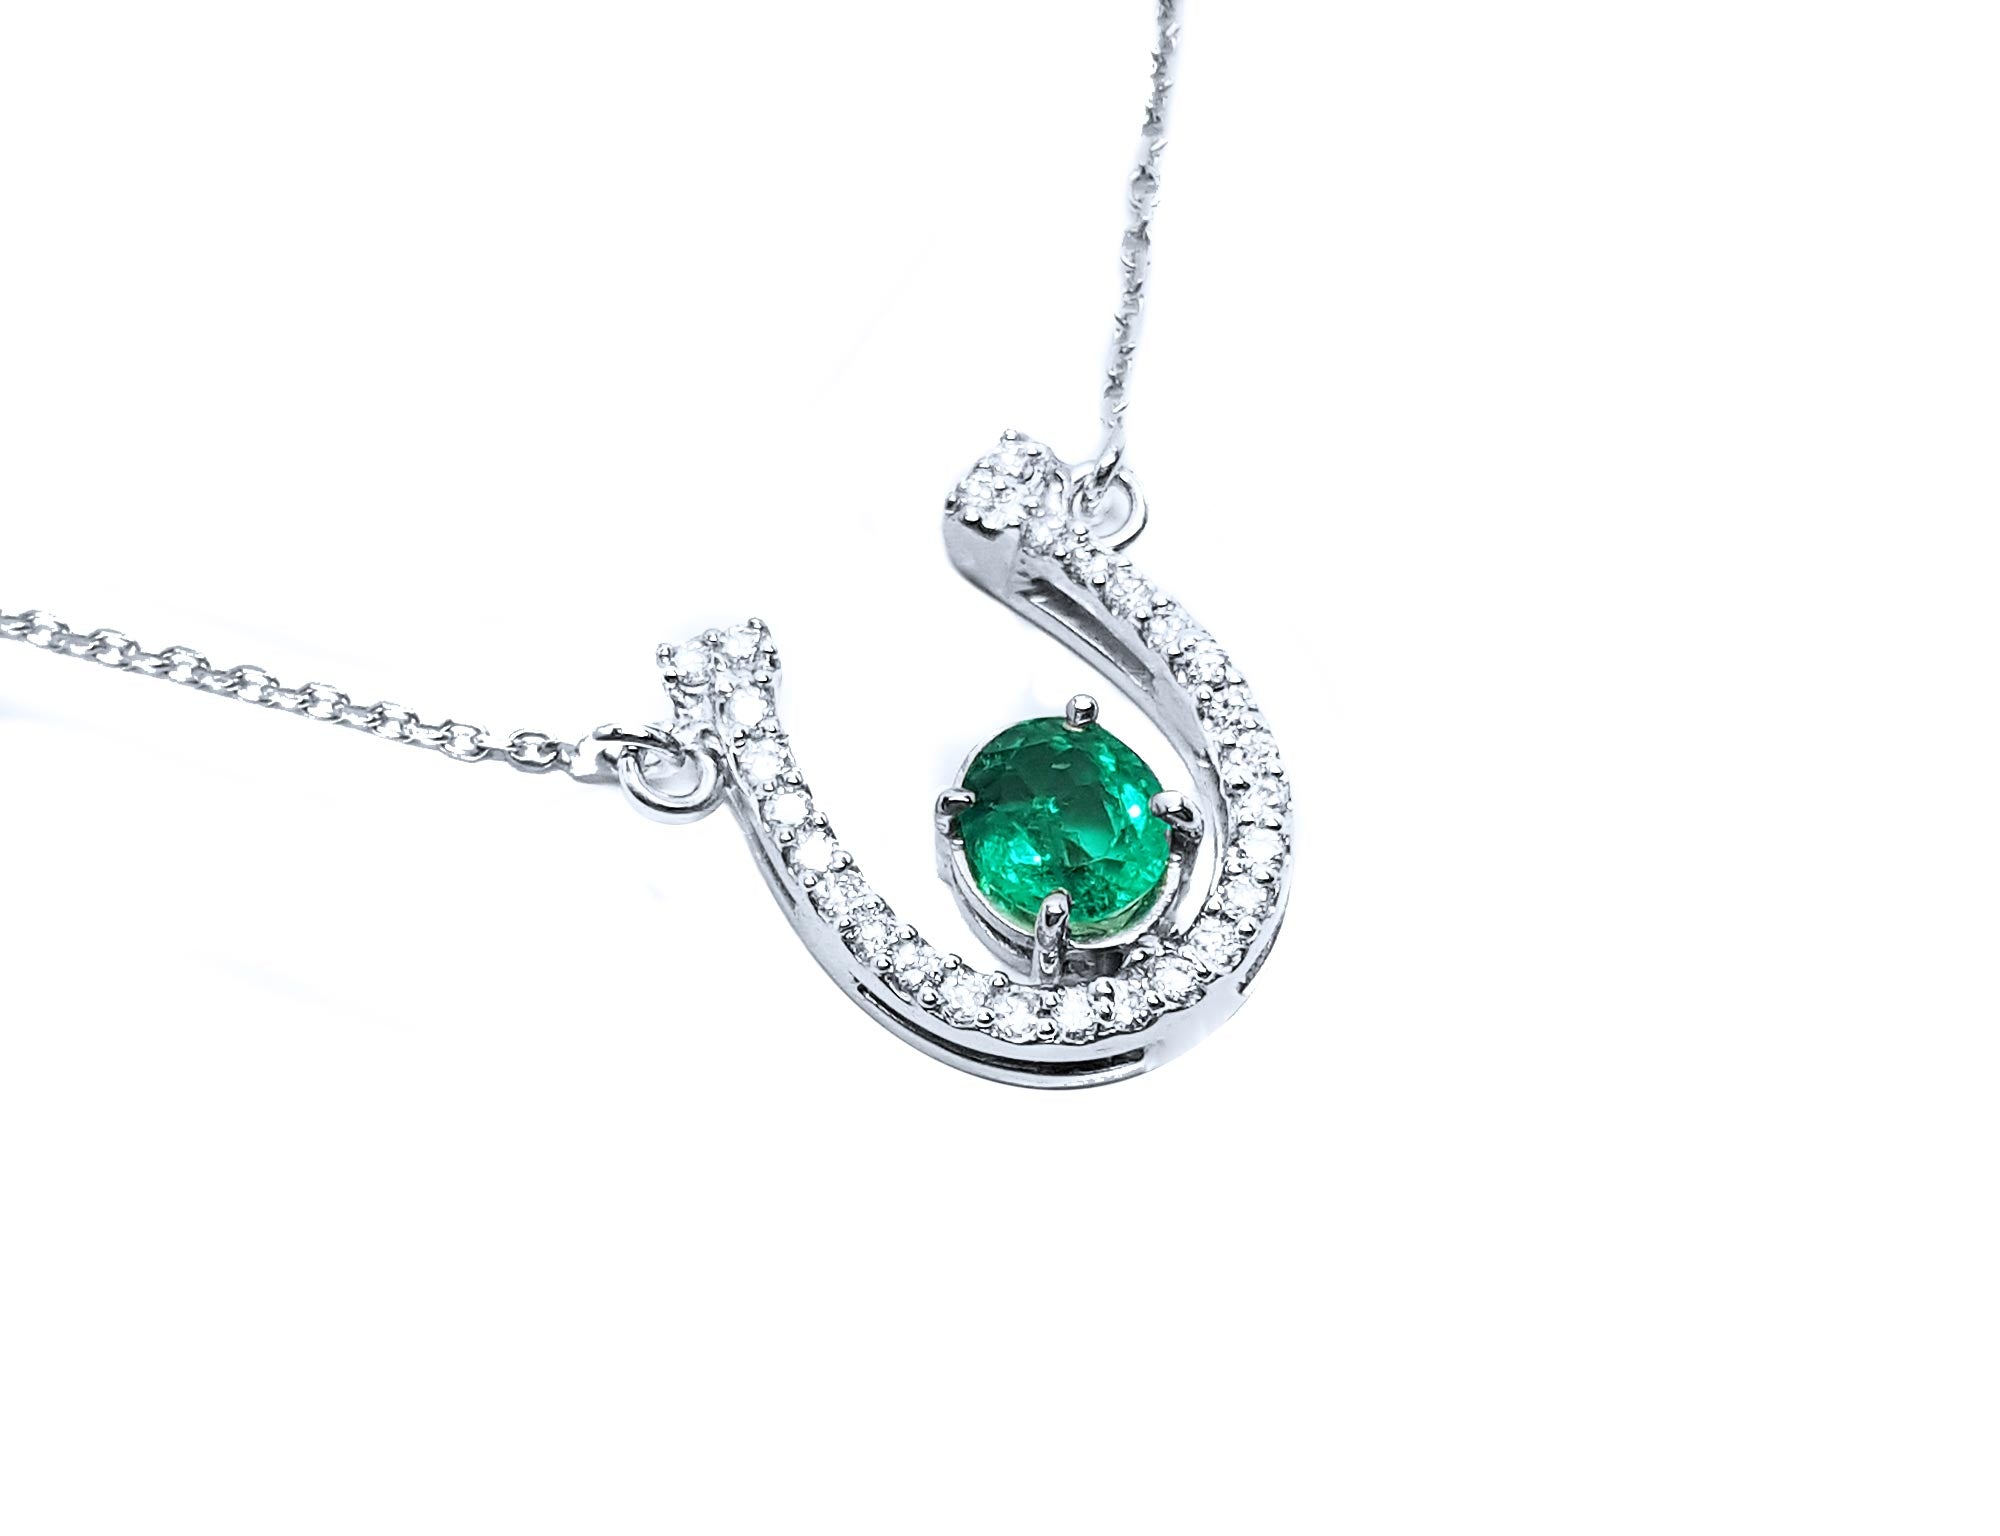 Real emerald necklace horseshoe